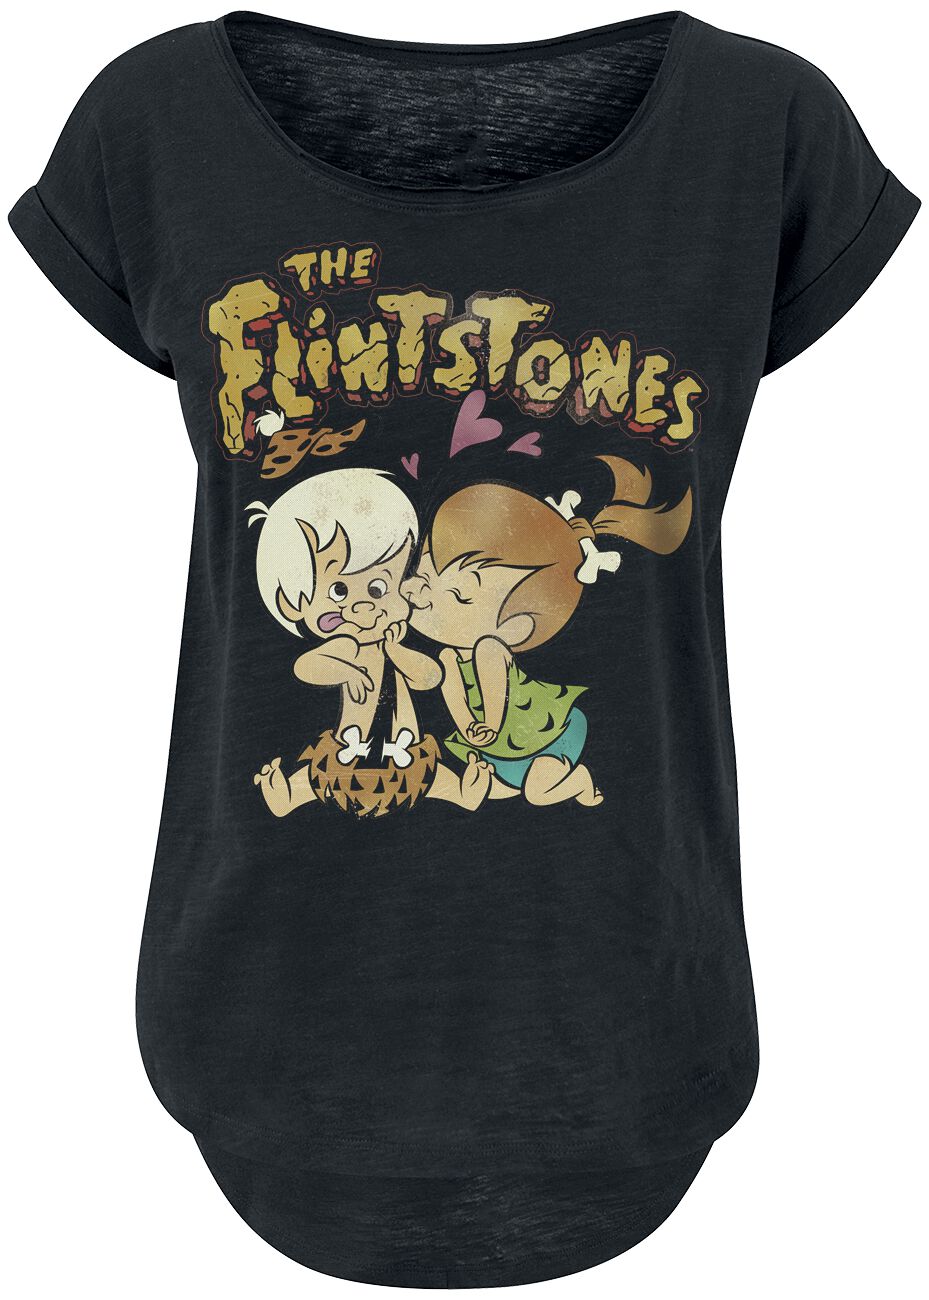 The Flintstones T-Shirt - Pebles & Bambam - XL - für Damen - Größe XL - schwarz  - EMP exklusives Merchandise!